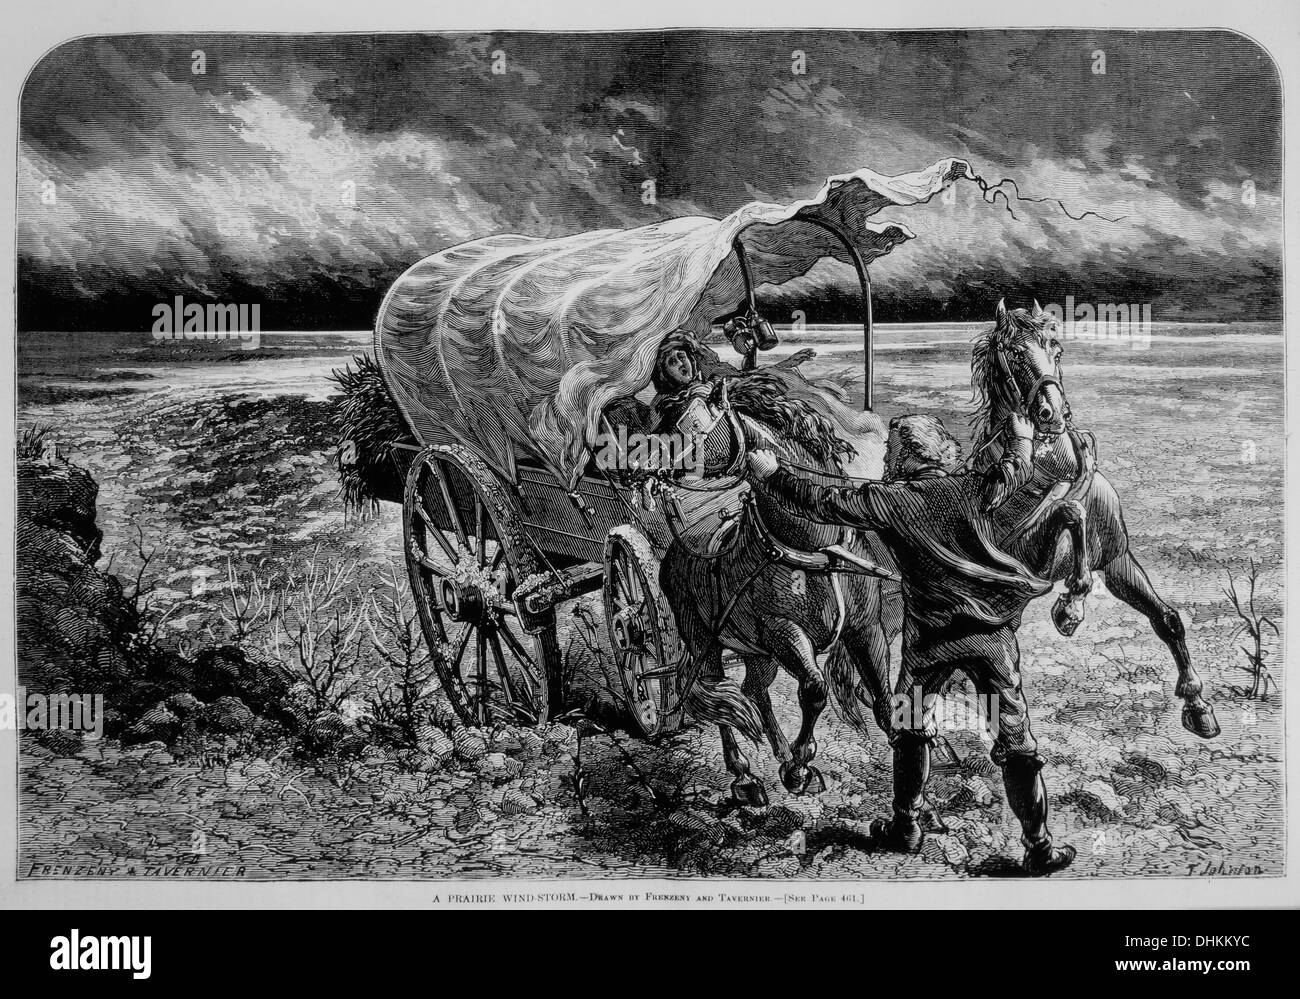 Mann und Frau mit Planwagen Prärie während Sturm, "Prairie Wind-Sturm" Harpers wöchentlich, 30. Mai 1874 Stockfoto